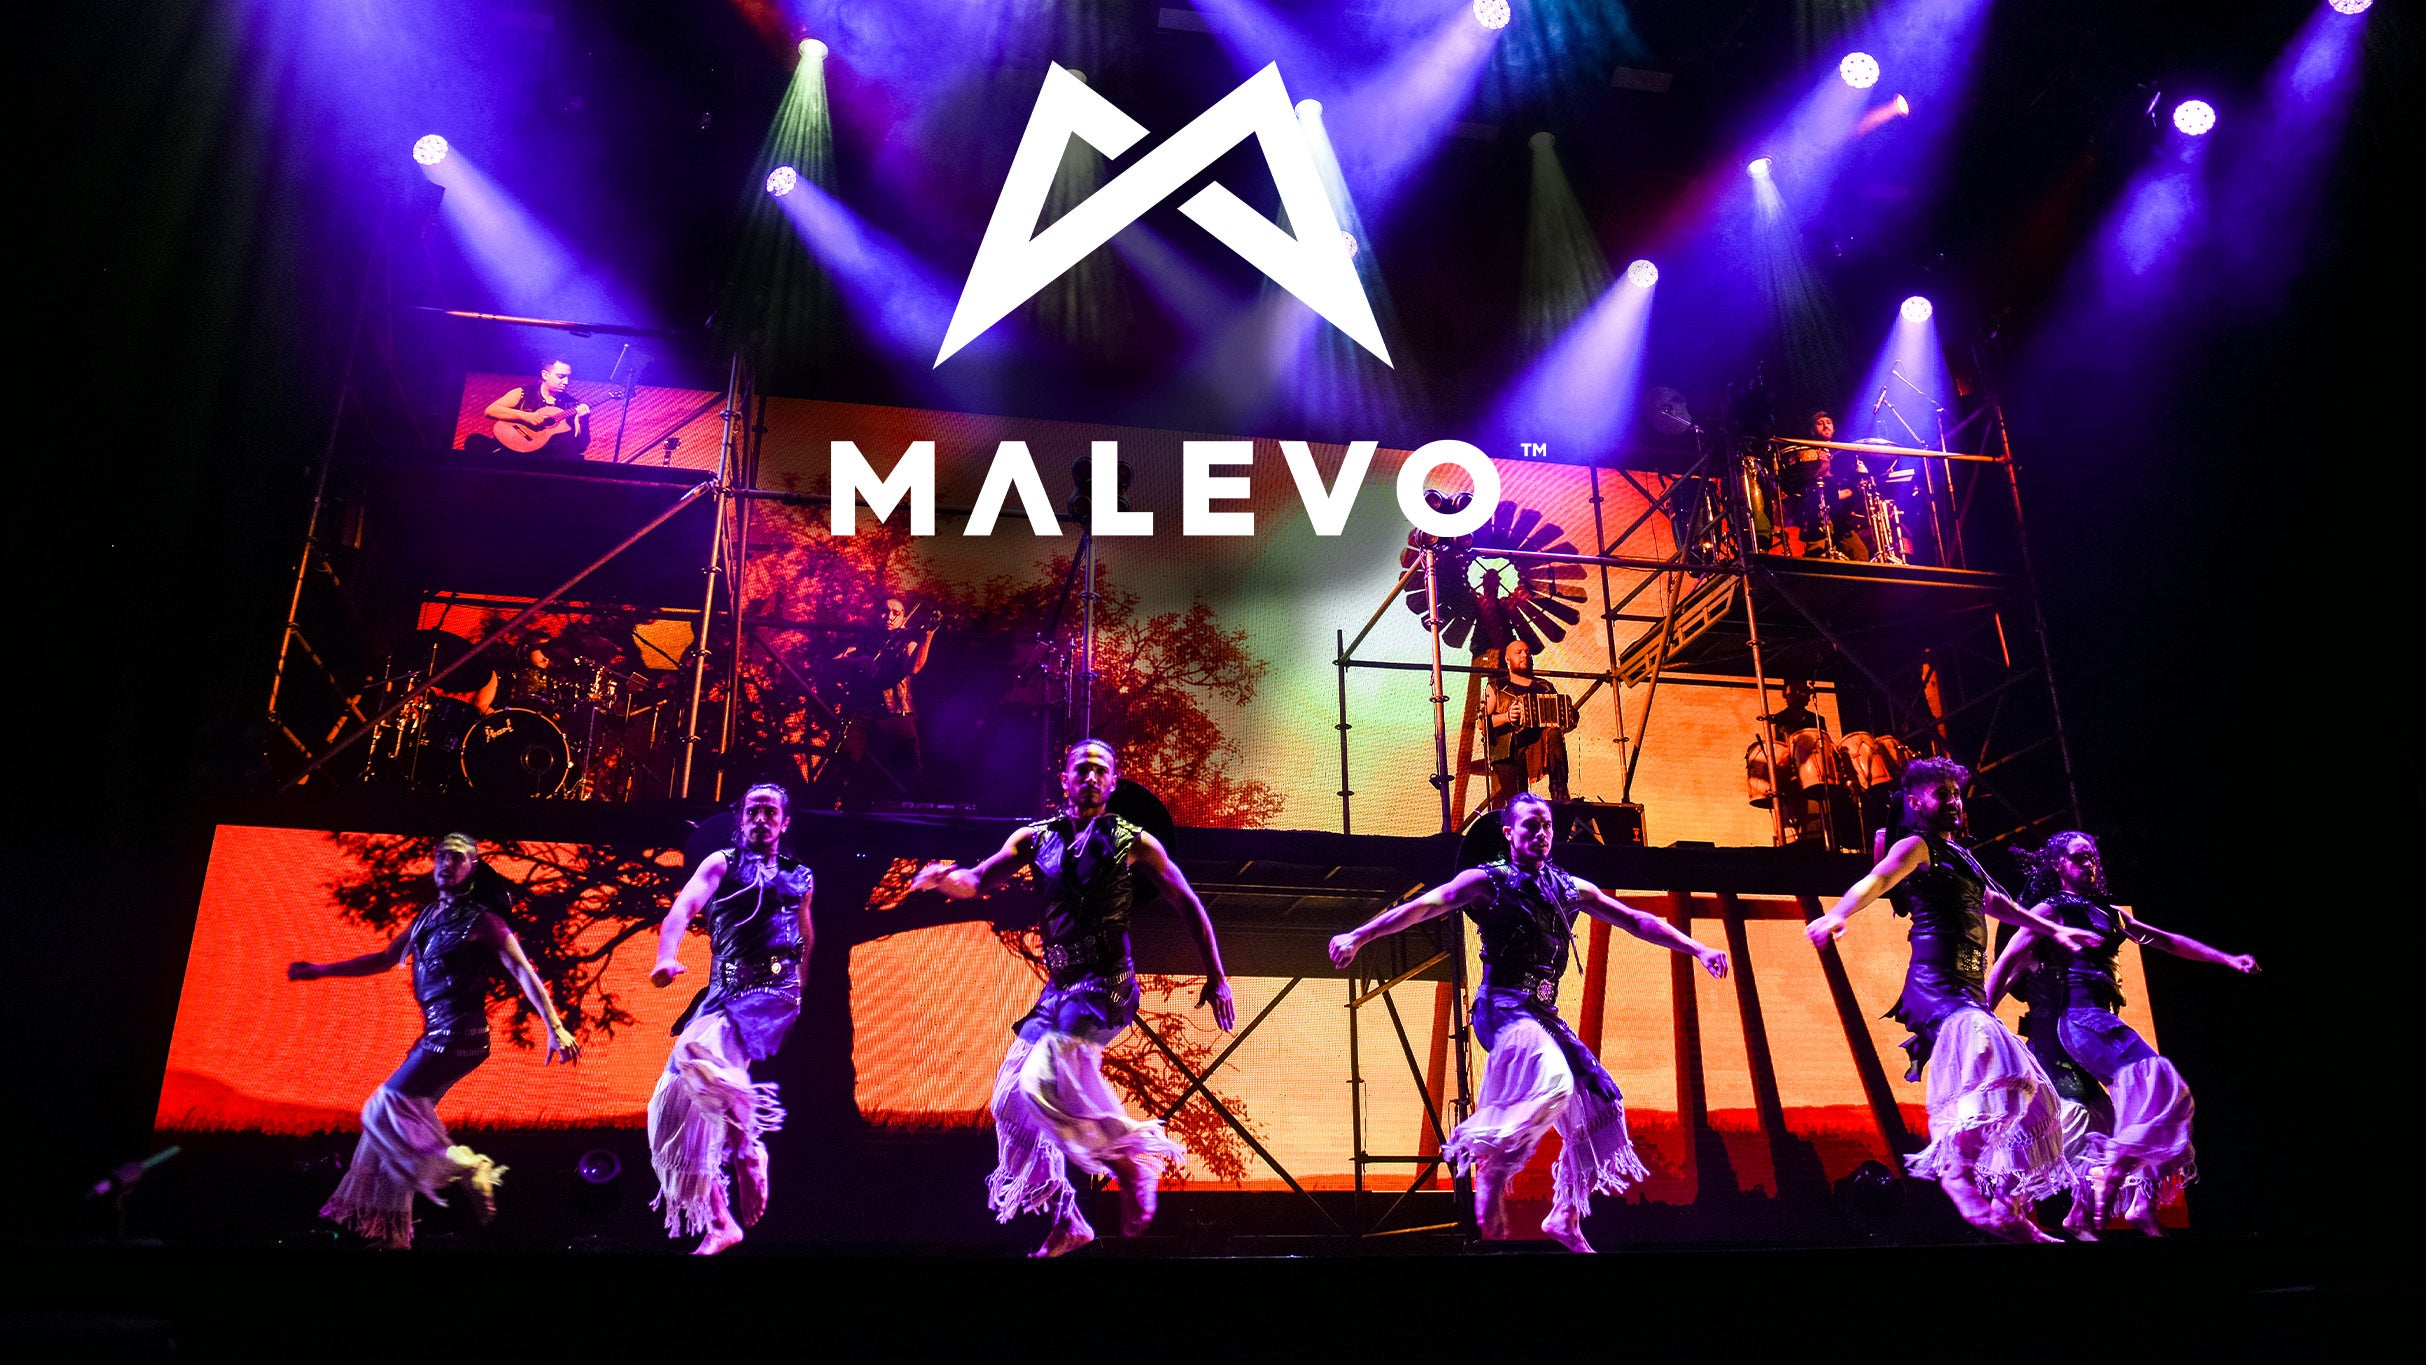 Malevo free presale info for show tickets in Peoria, IL (Peoria Civic Center)